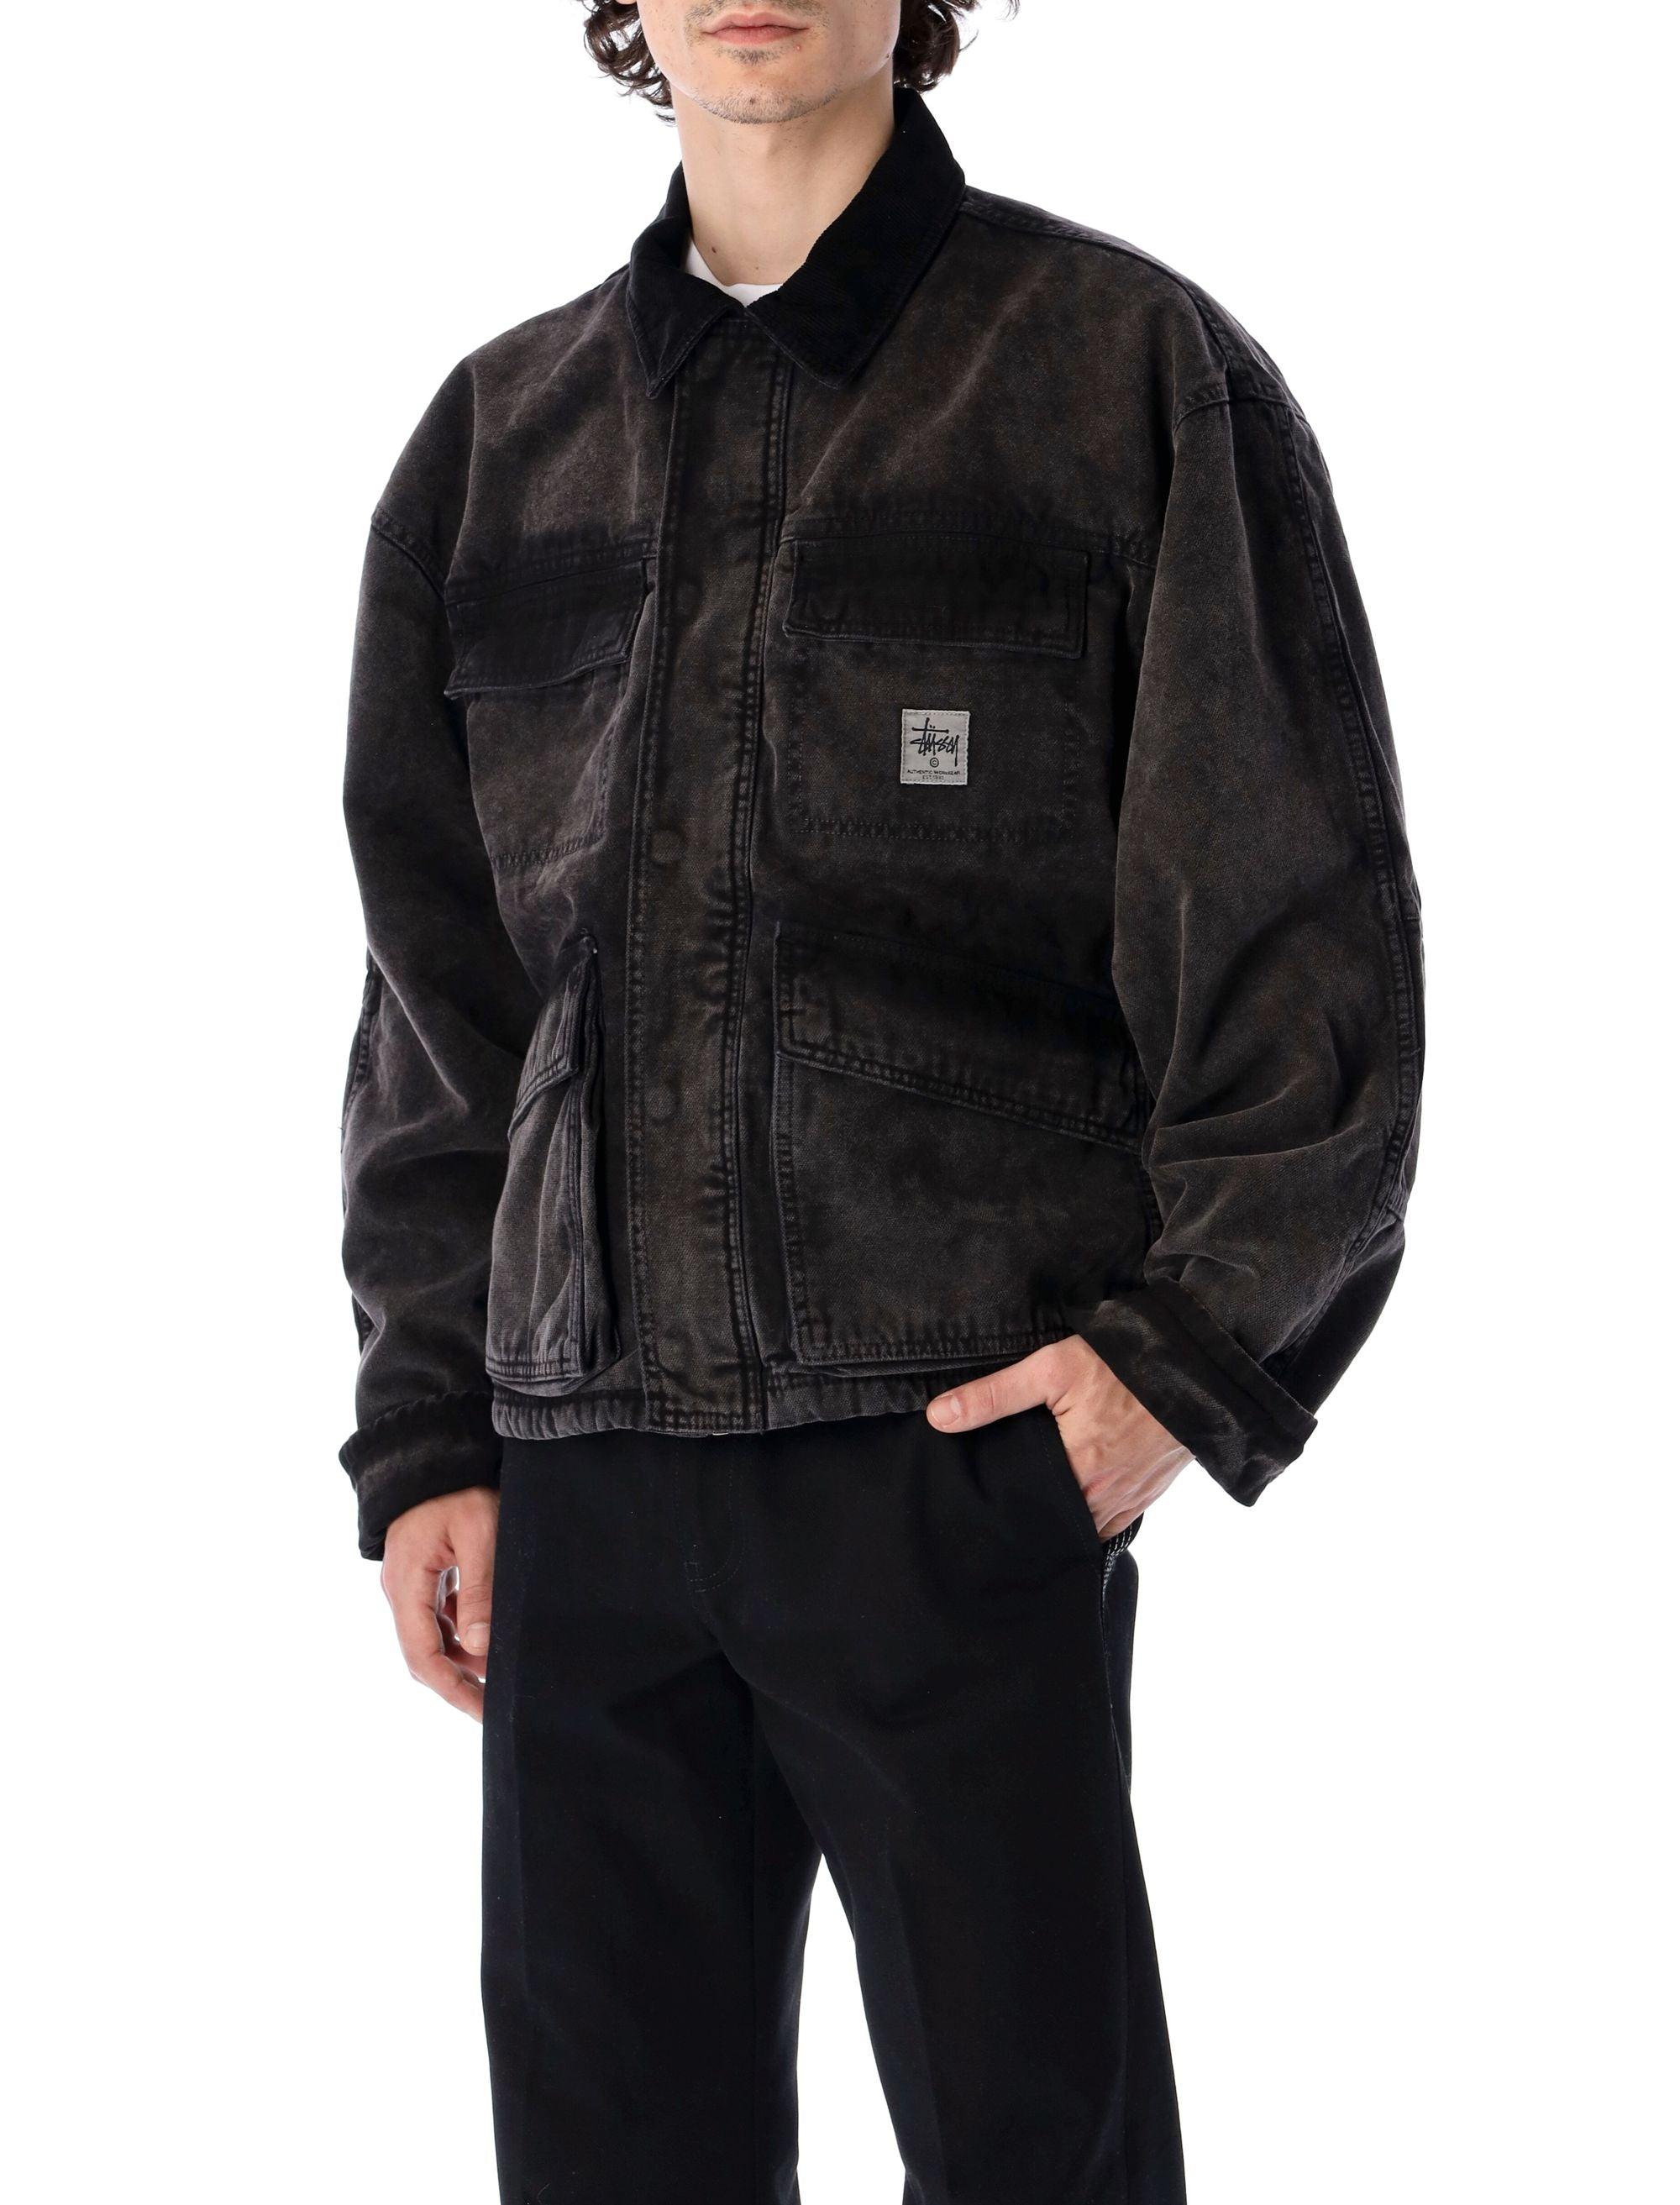 Stussy Washed Canvas Shop Jacket in Black for Men - Lyst